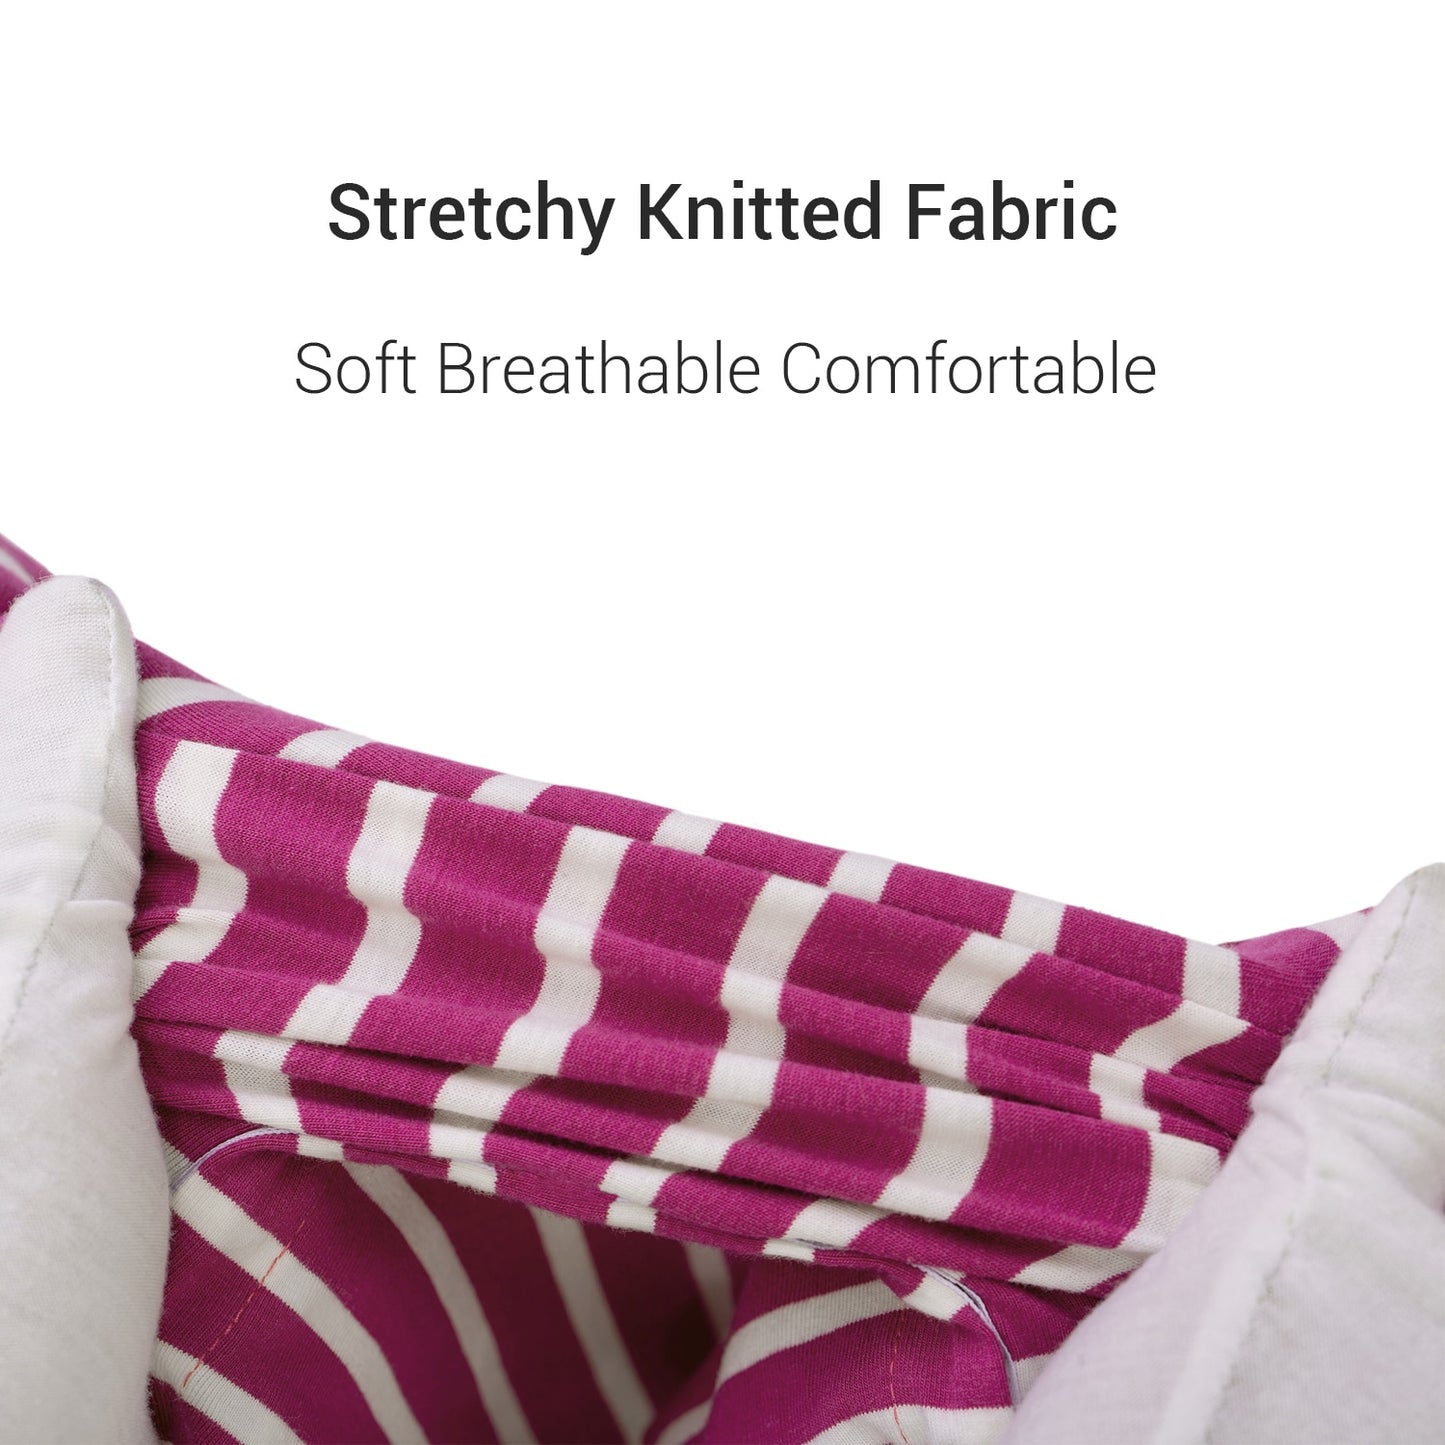 StripeNap-French-Bulldog-Pajamas-Stylish-and-Snug-Striped-Sleepwear-www.frenchie.shop